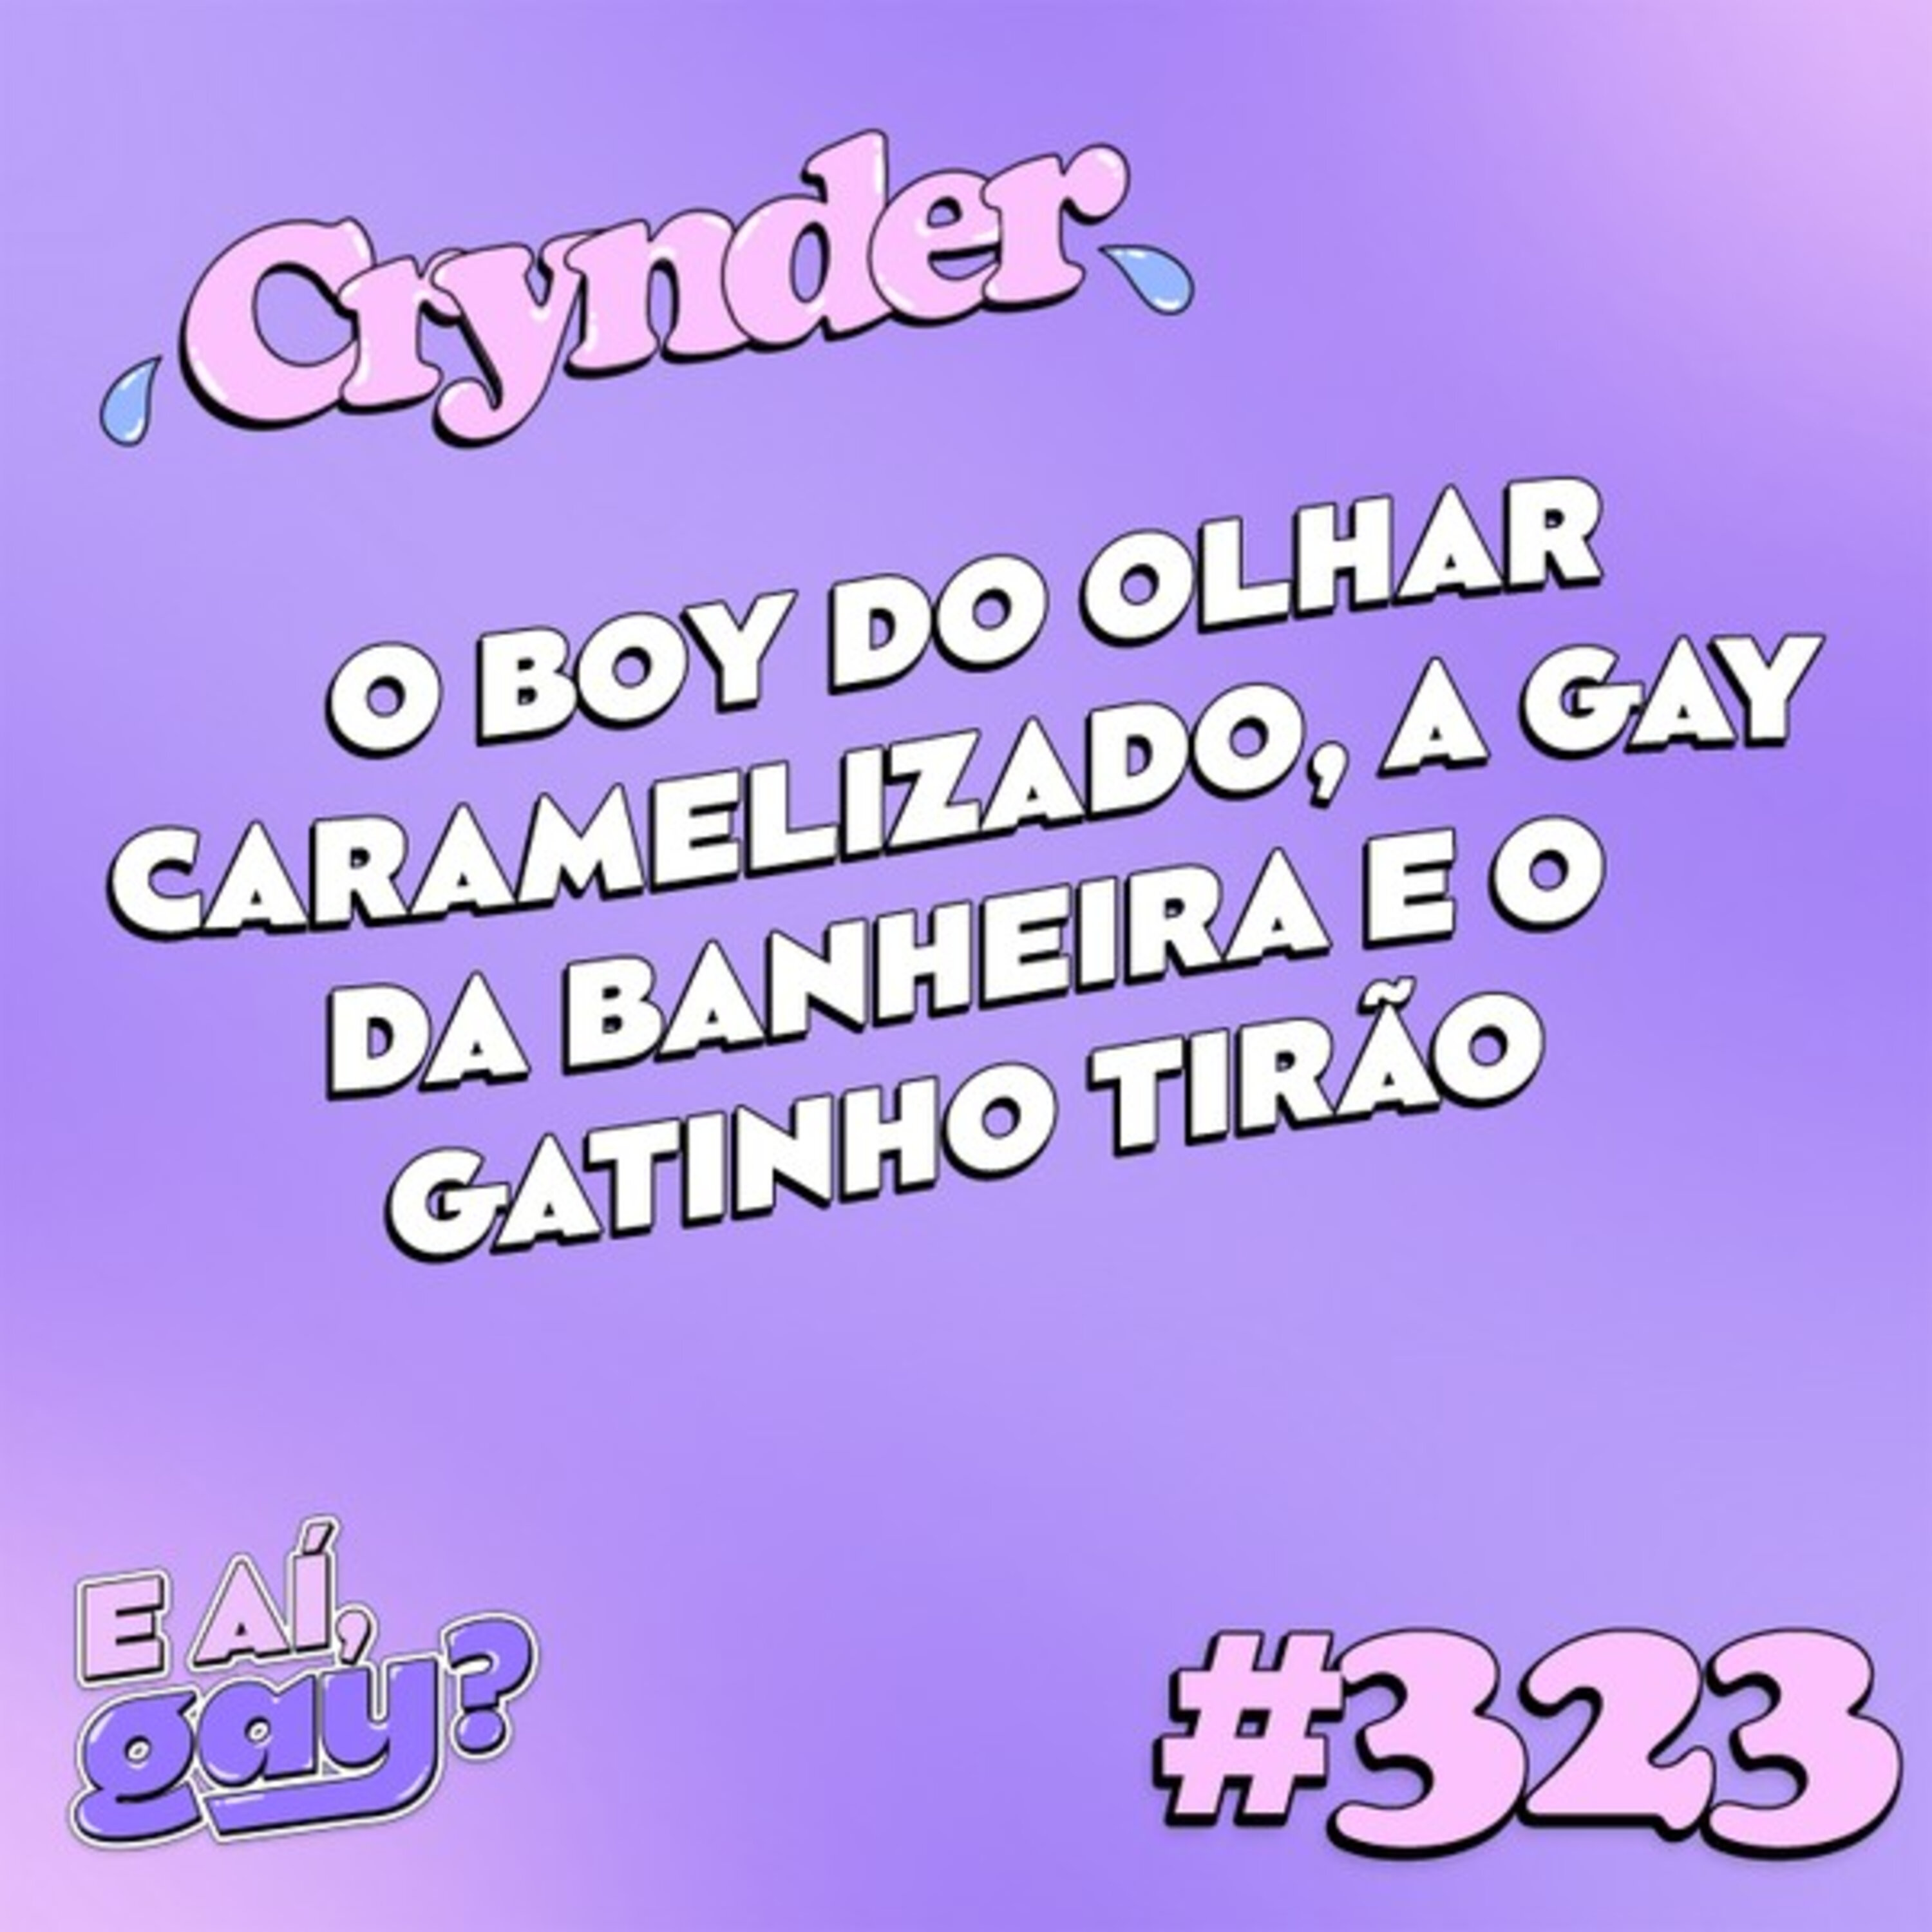 #323: Crynder - O boy do olhar caramelizado, a gay da banheira e o gatinho tirão